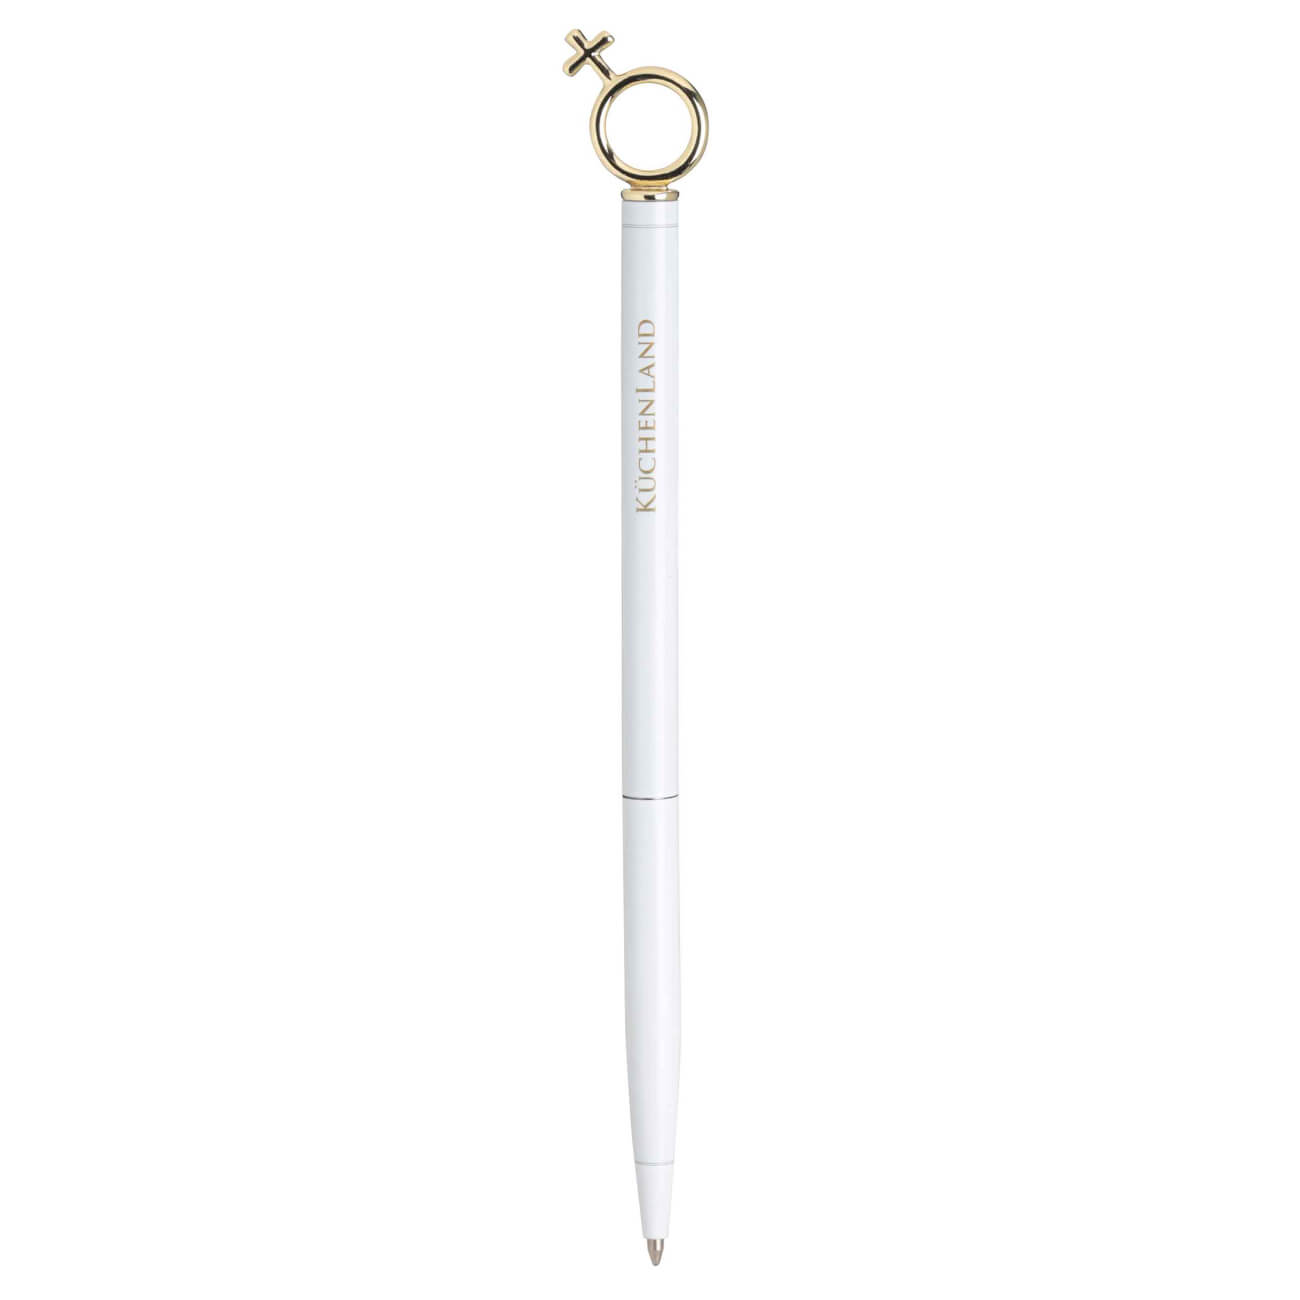 Ручка шариковая, 14 см, с фигуркой, металл, белая, Символ женщины, Draw figure dueto gun ручка стилус